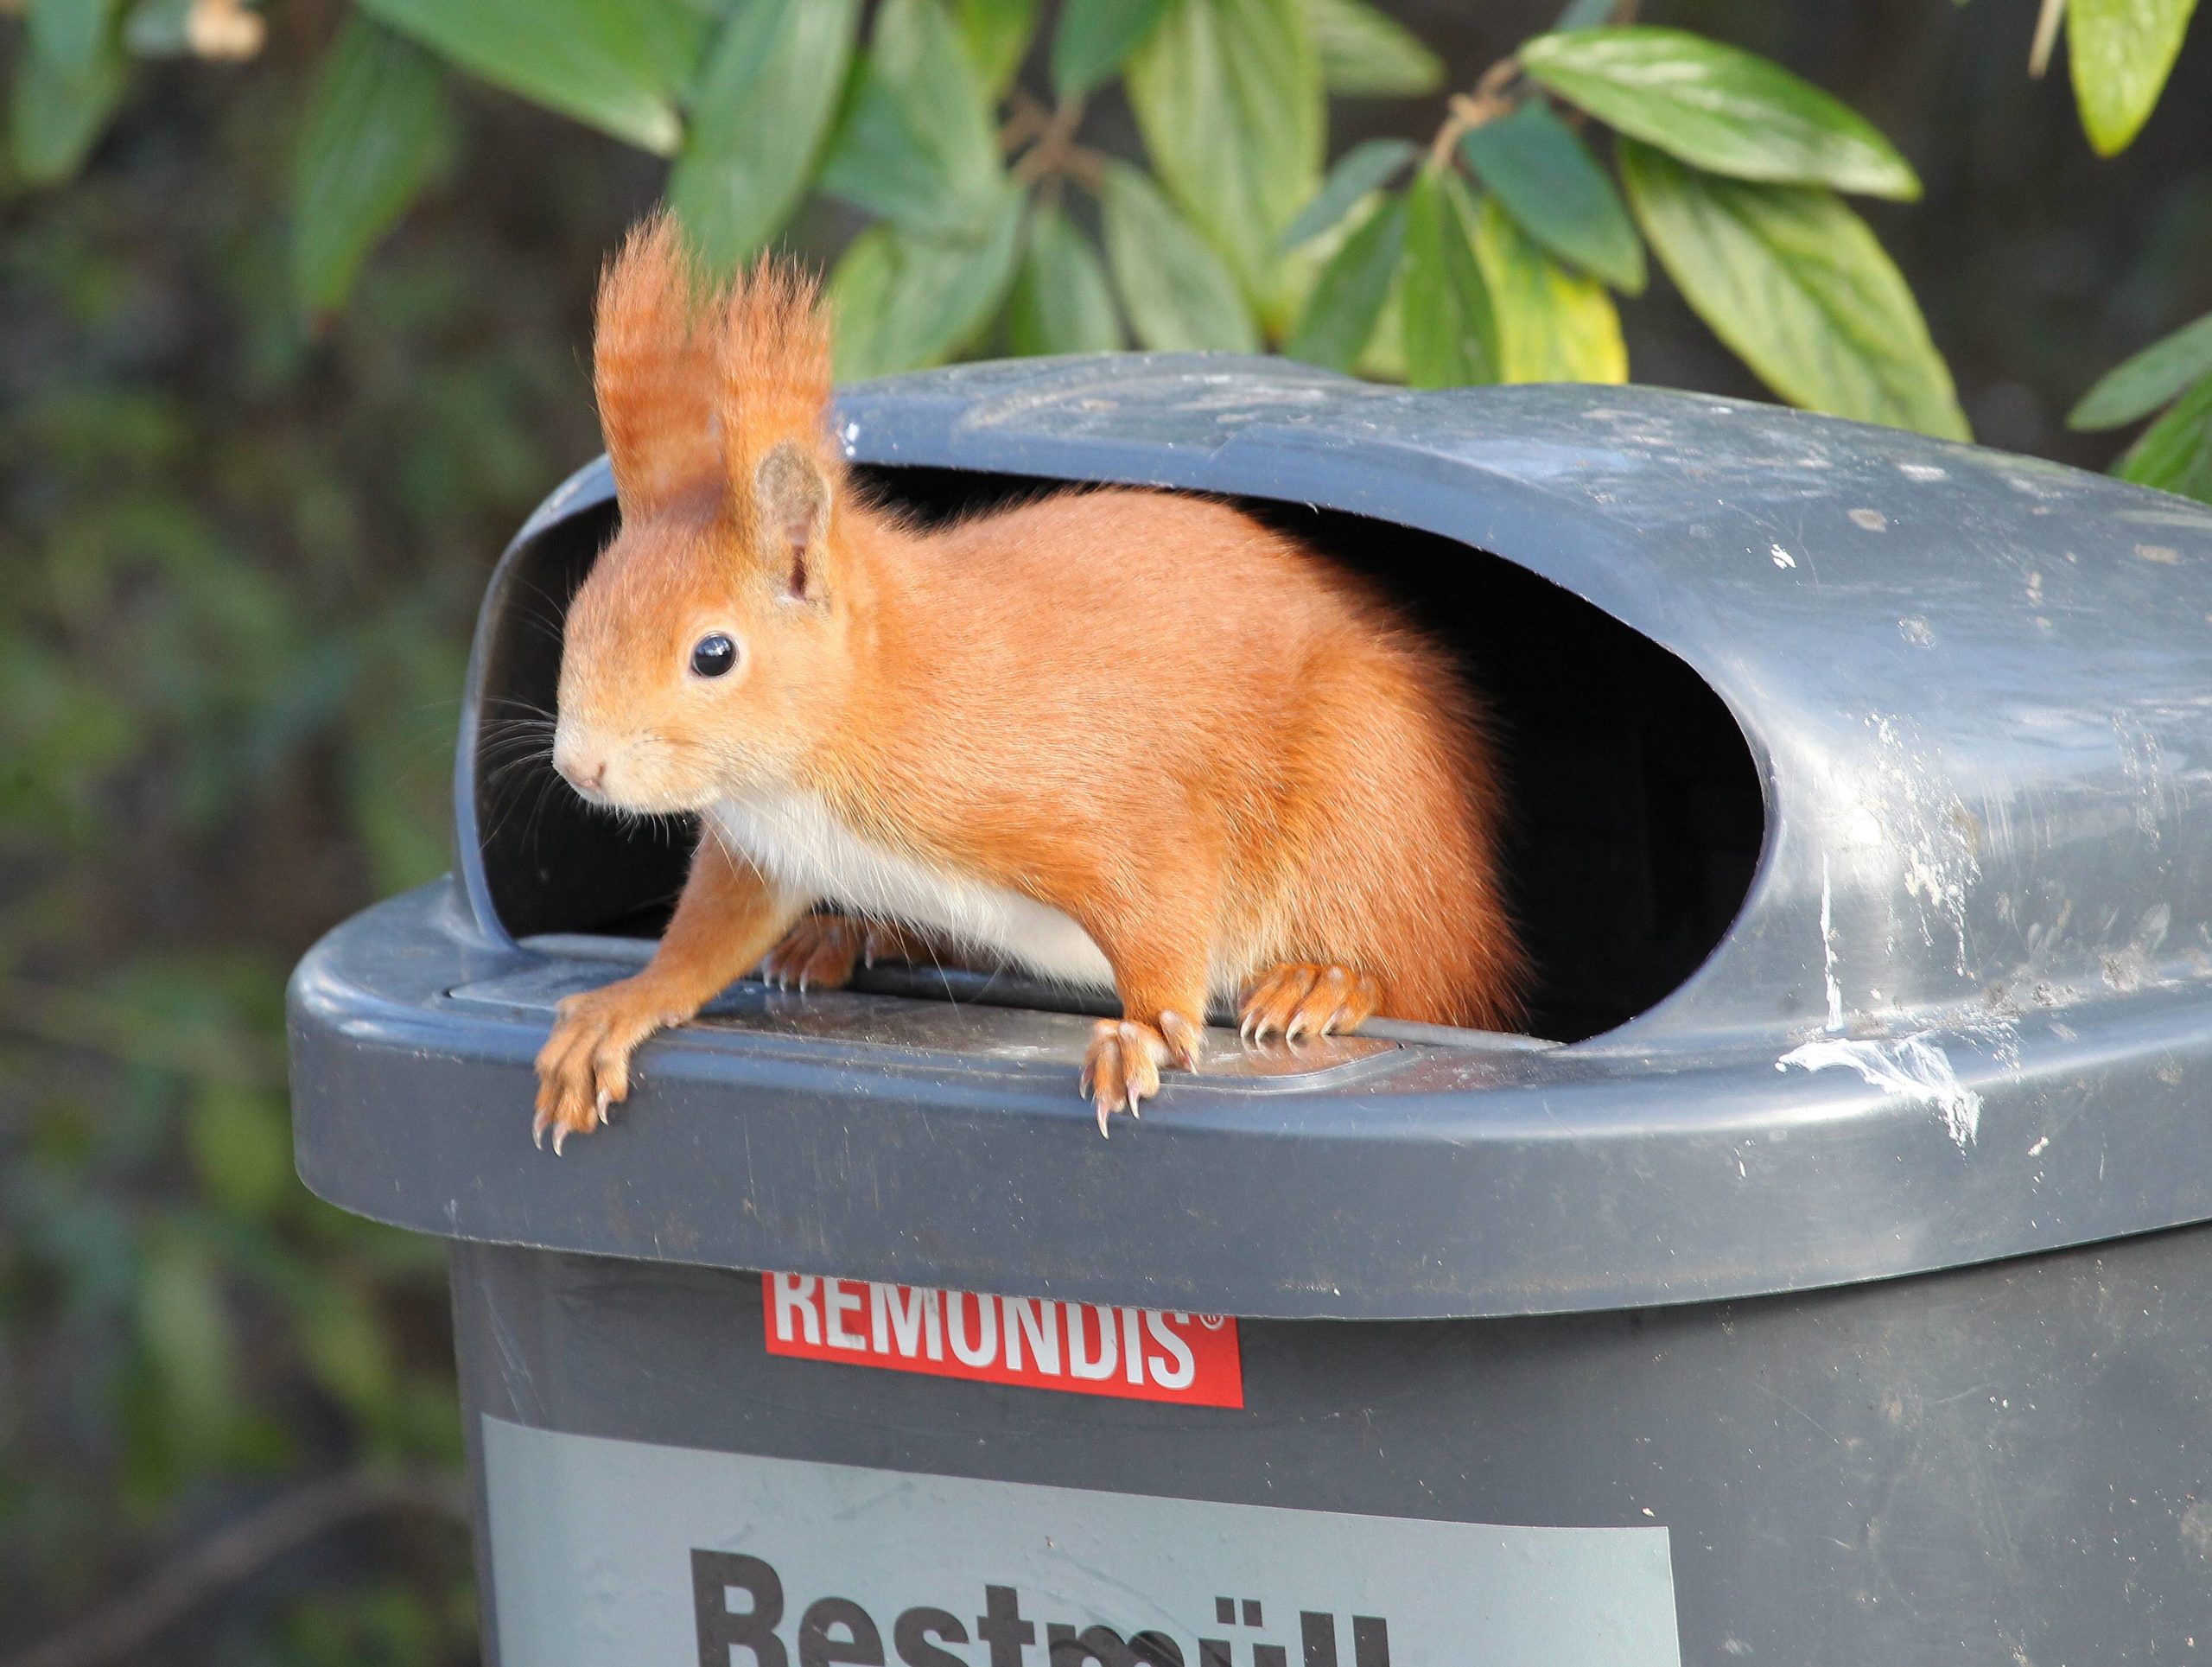 Eichhörnchen in Berlin: Eichhörnchen sucht nach Nahrung in einem Mülleimer. Foto: Imago/Olaf Wagner